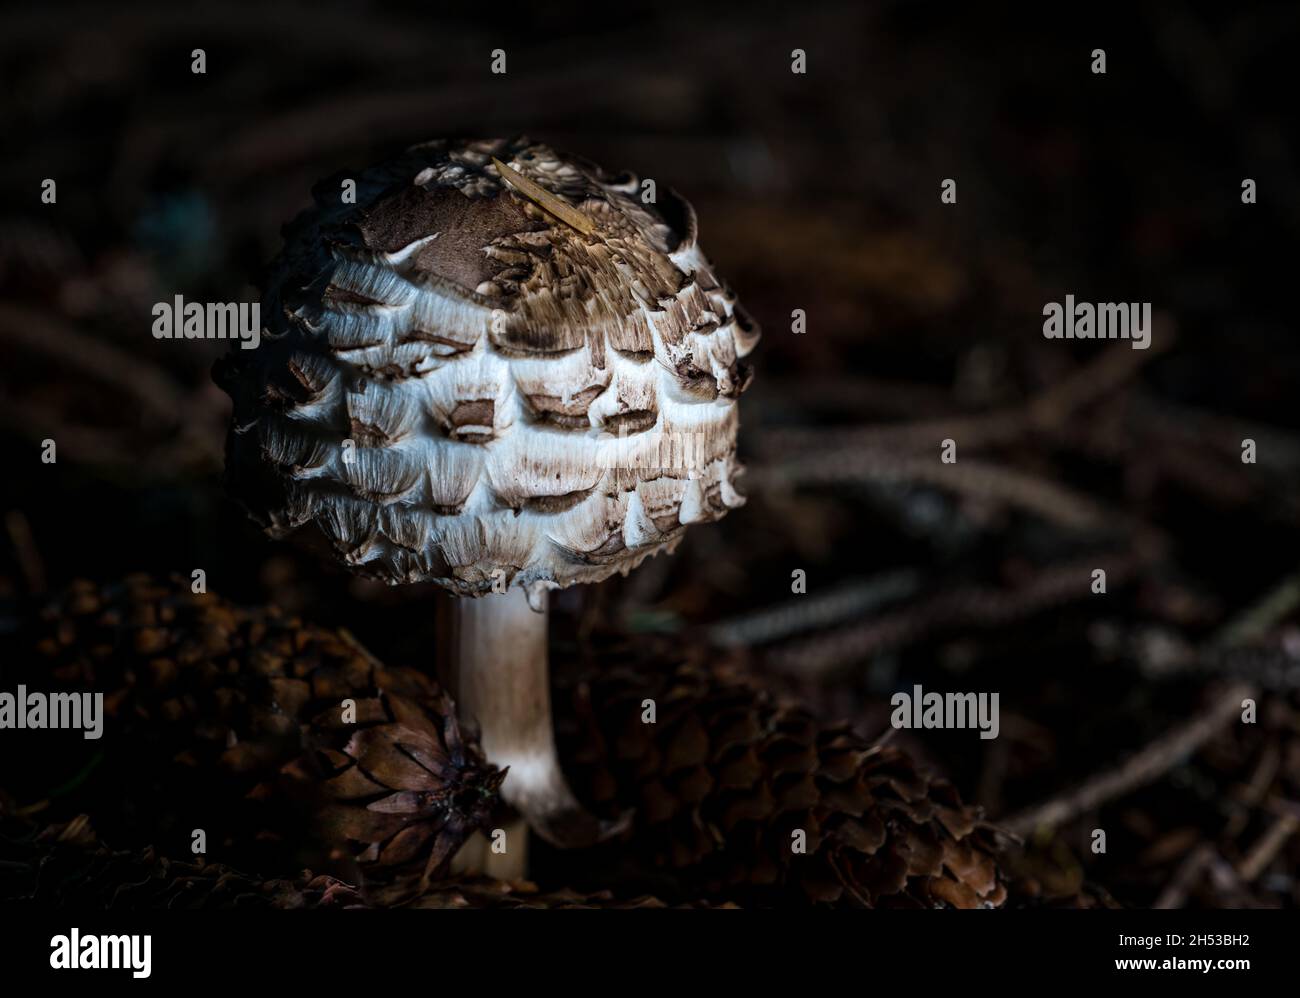 Close up of shaggy parasol mushroom or fungus (Chlorophyllum rhacodes) growing on woodland ground, Scotland, UK Stock Photo